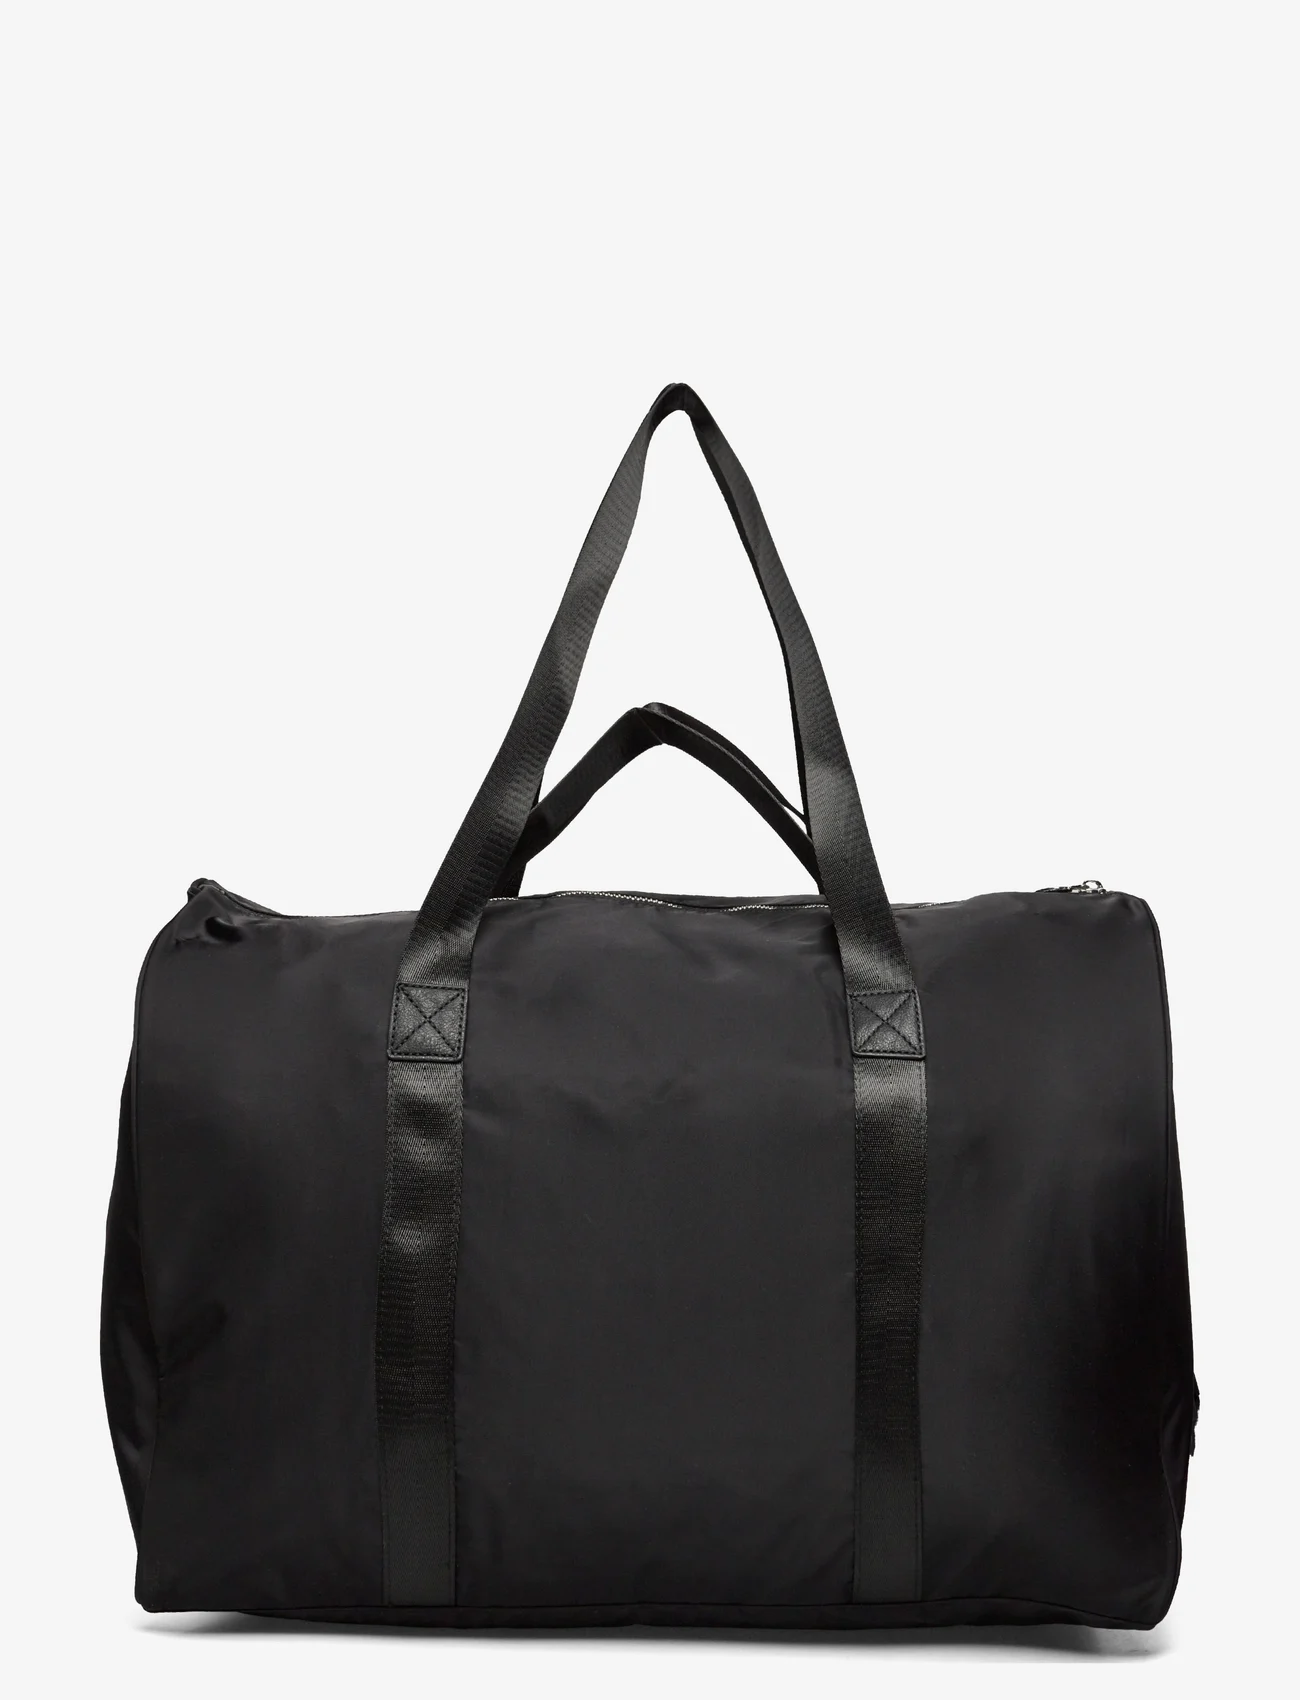 Rosemunde - Recycled weekend bag - weekend bags - black silver - 1